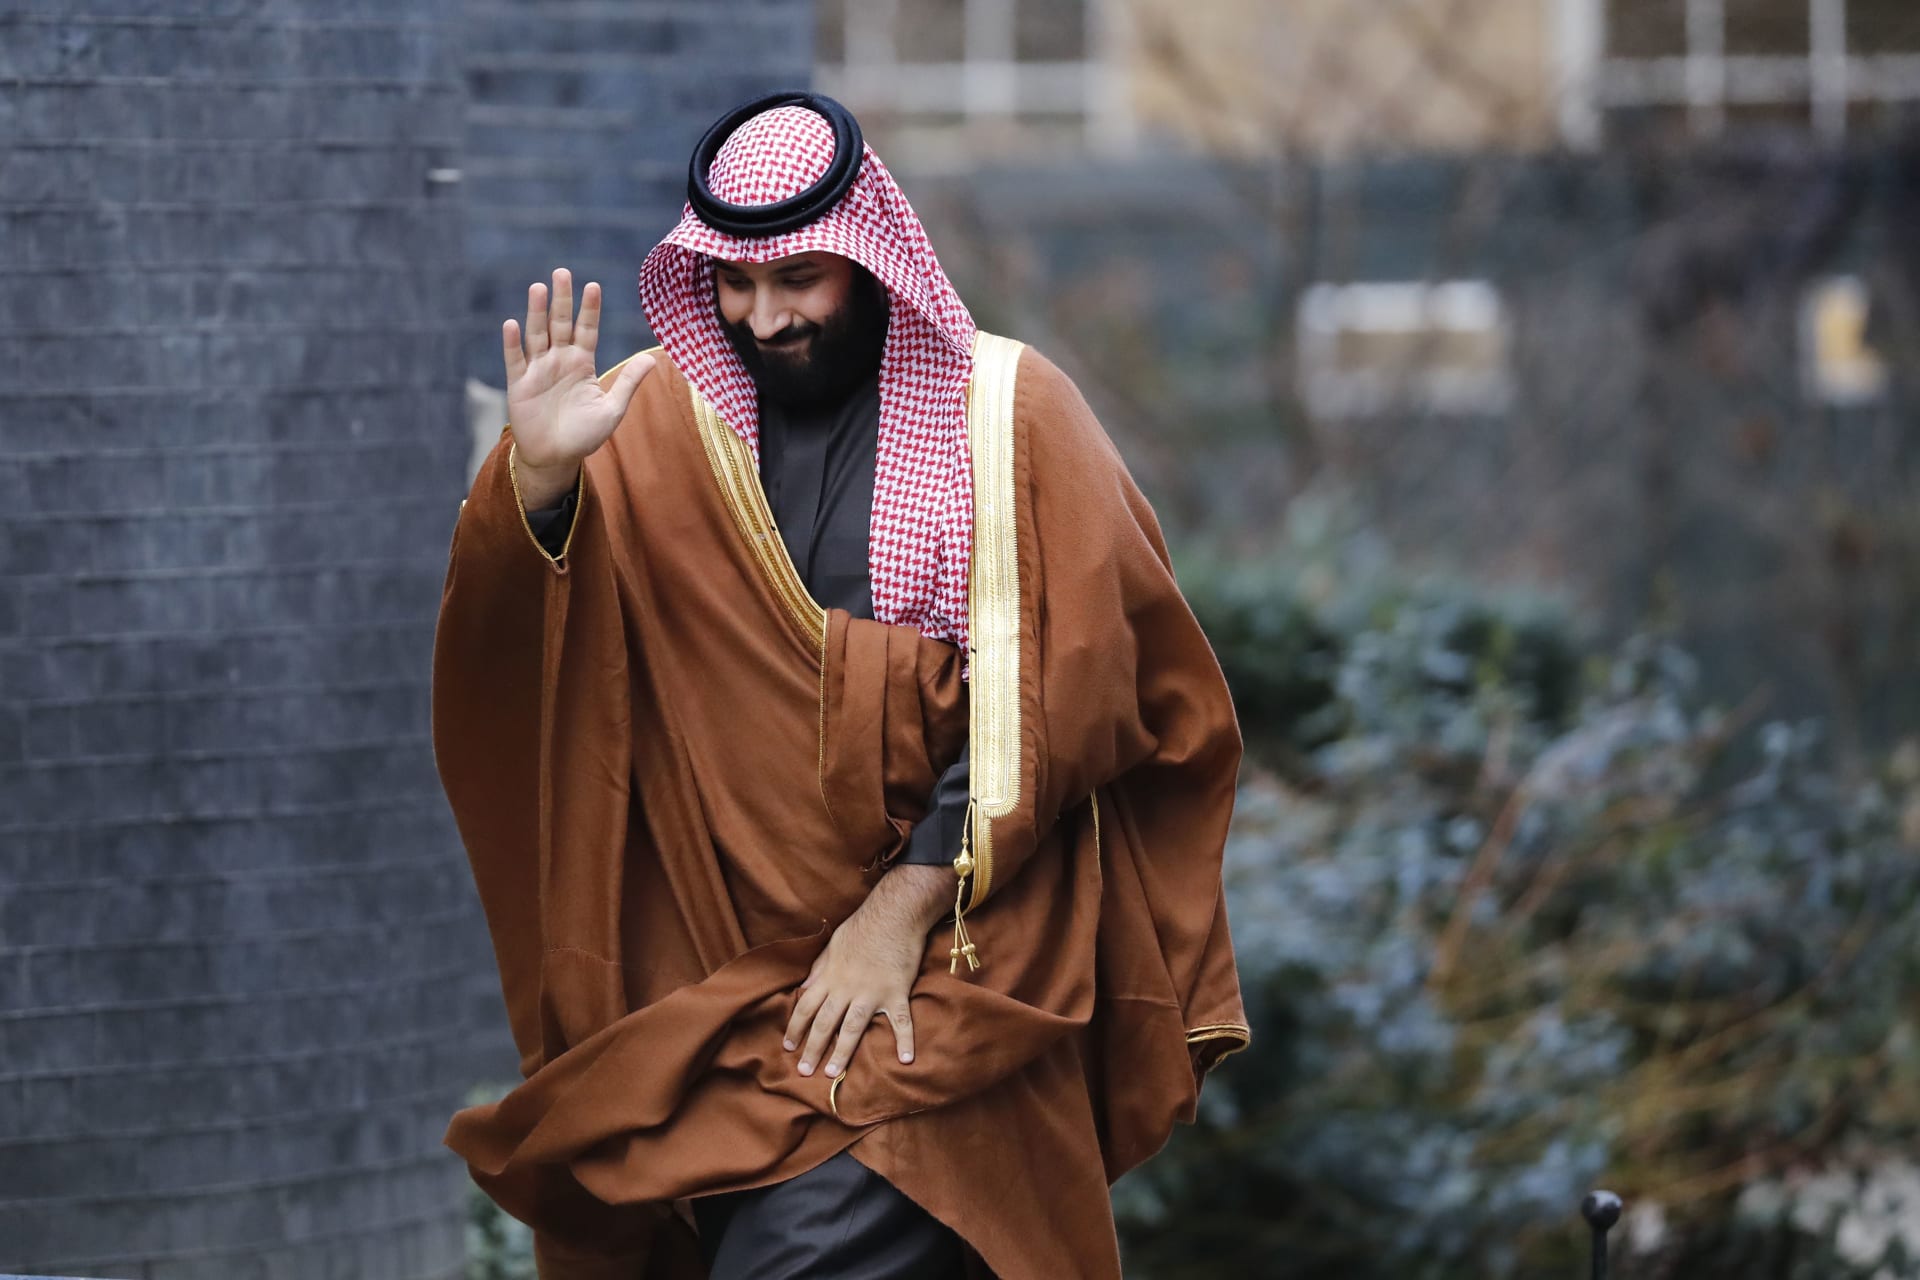 ما الذي قاله محمد بن سلمان حول إجرءات مكافحة الفساد وحقوق الإنسان في السعودية؟